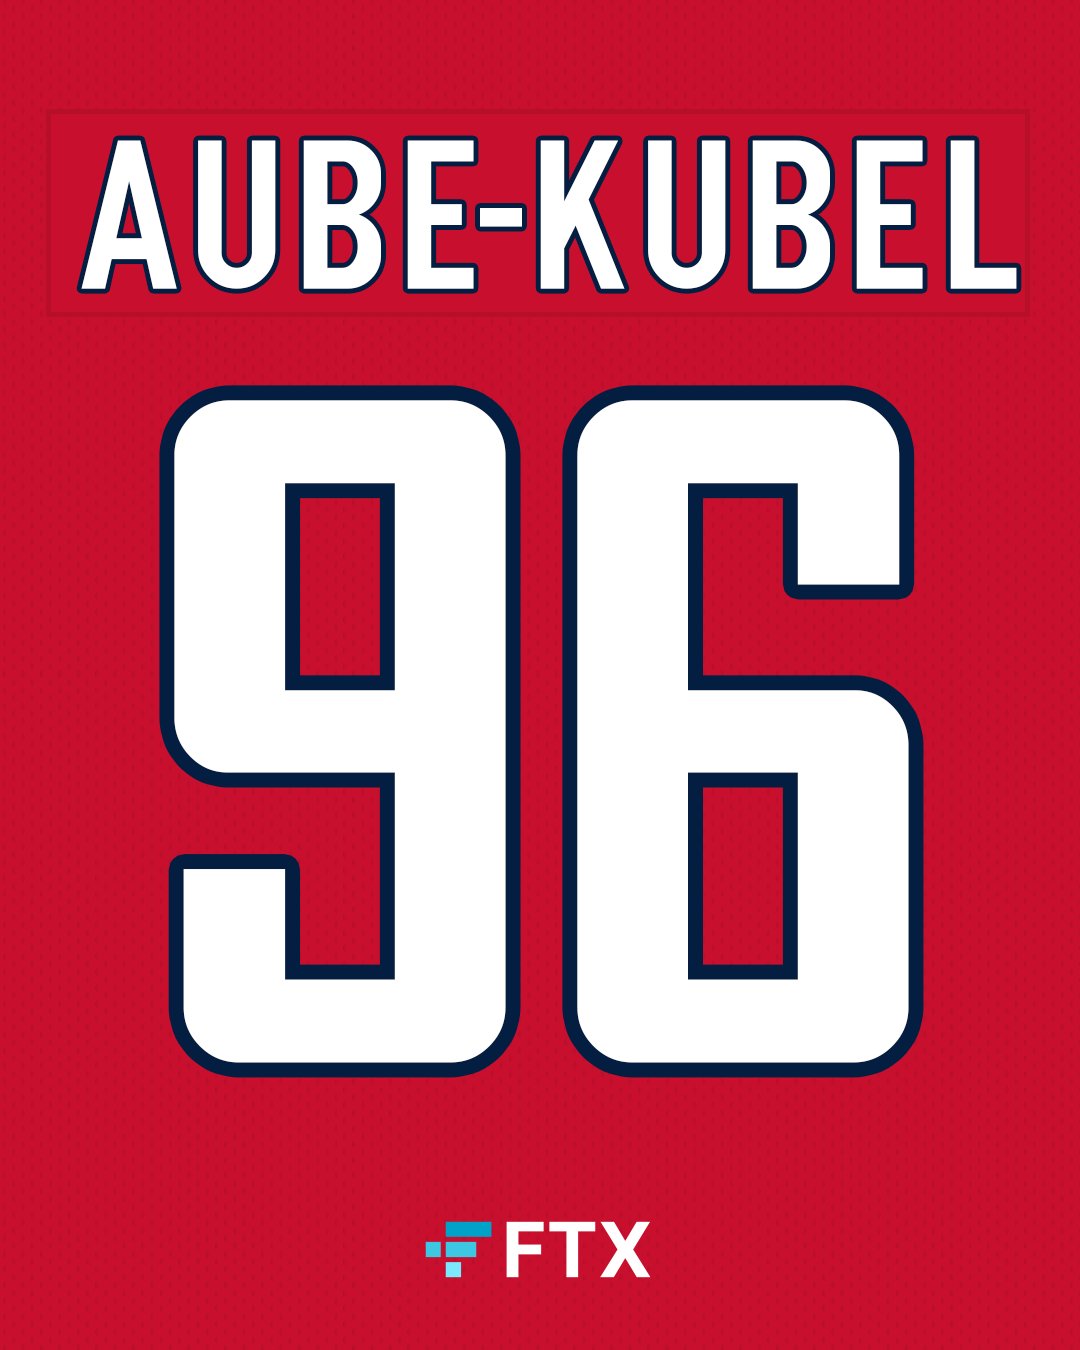 That's Washington Capital Aube-Kubel, to you. 🦅 Nicolas Aube